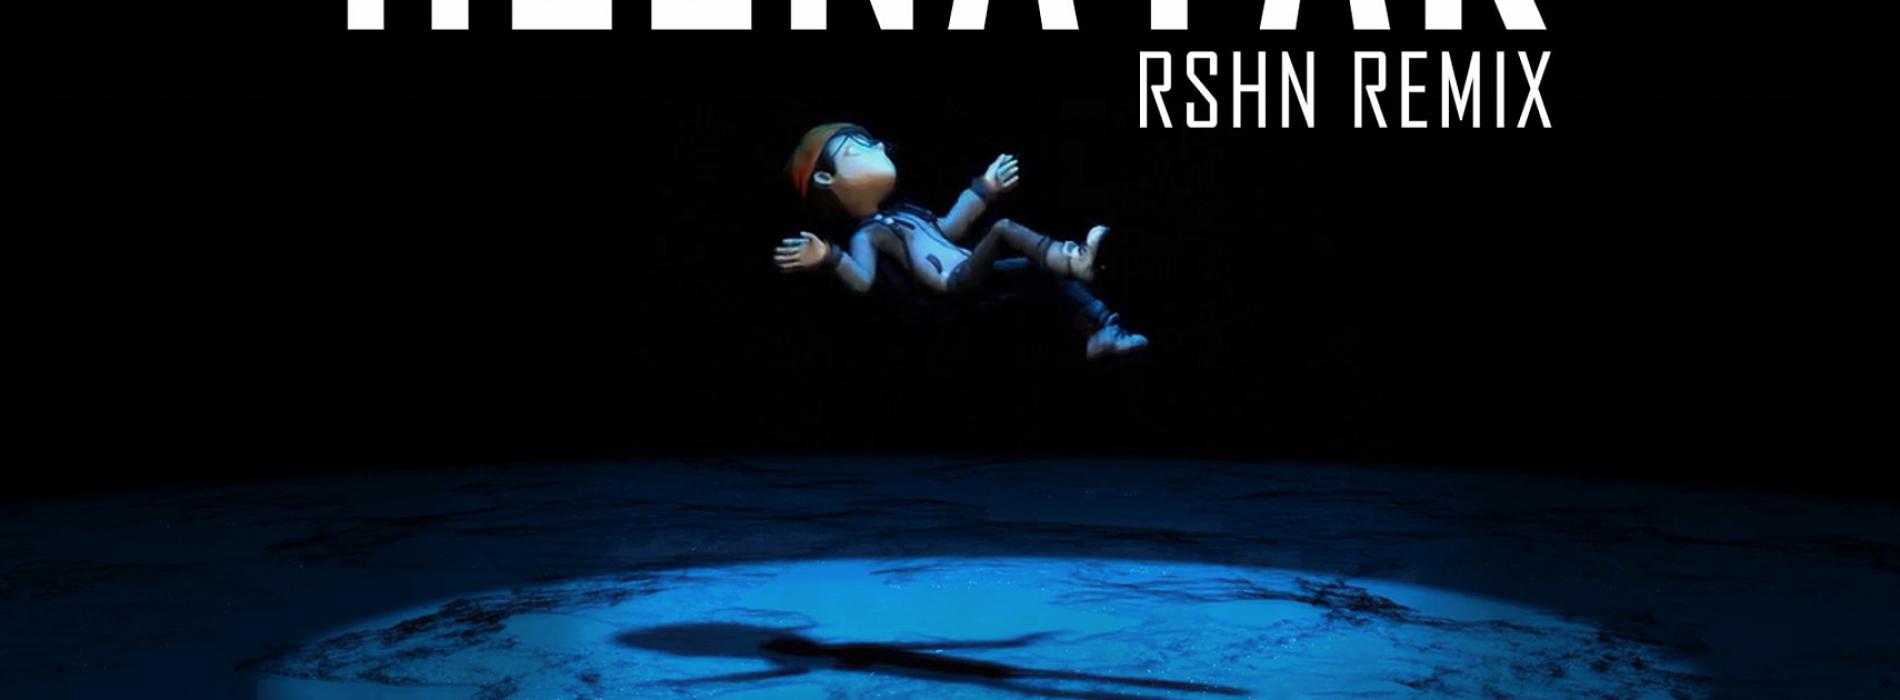 New Music : Mahiru Senarathne ft Gagana Hirusha – Heenayak (RSHN REMIX)